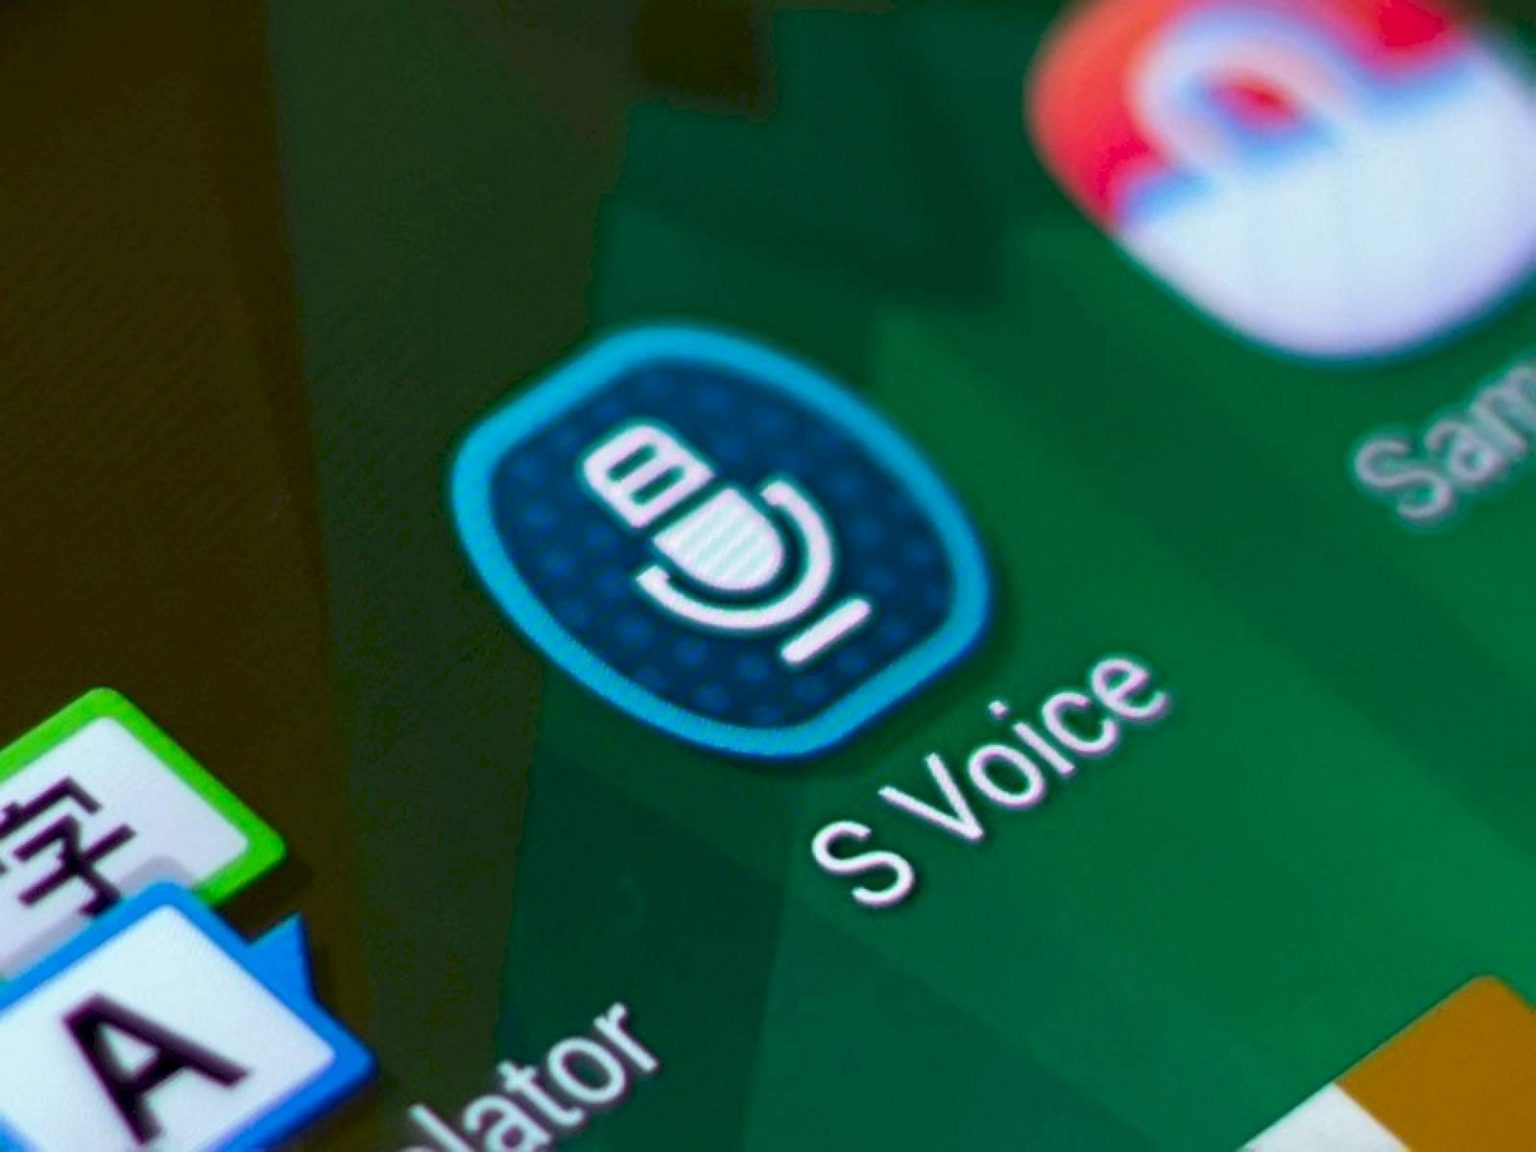 Samsung S Voice